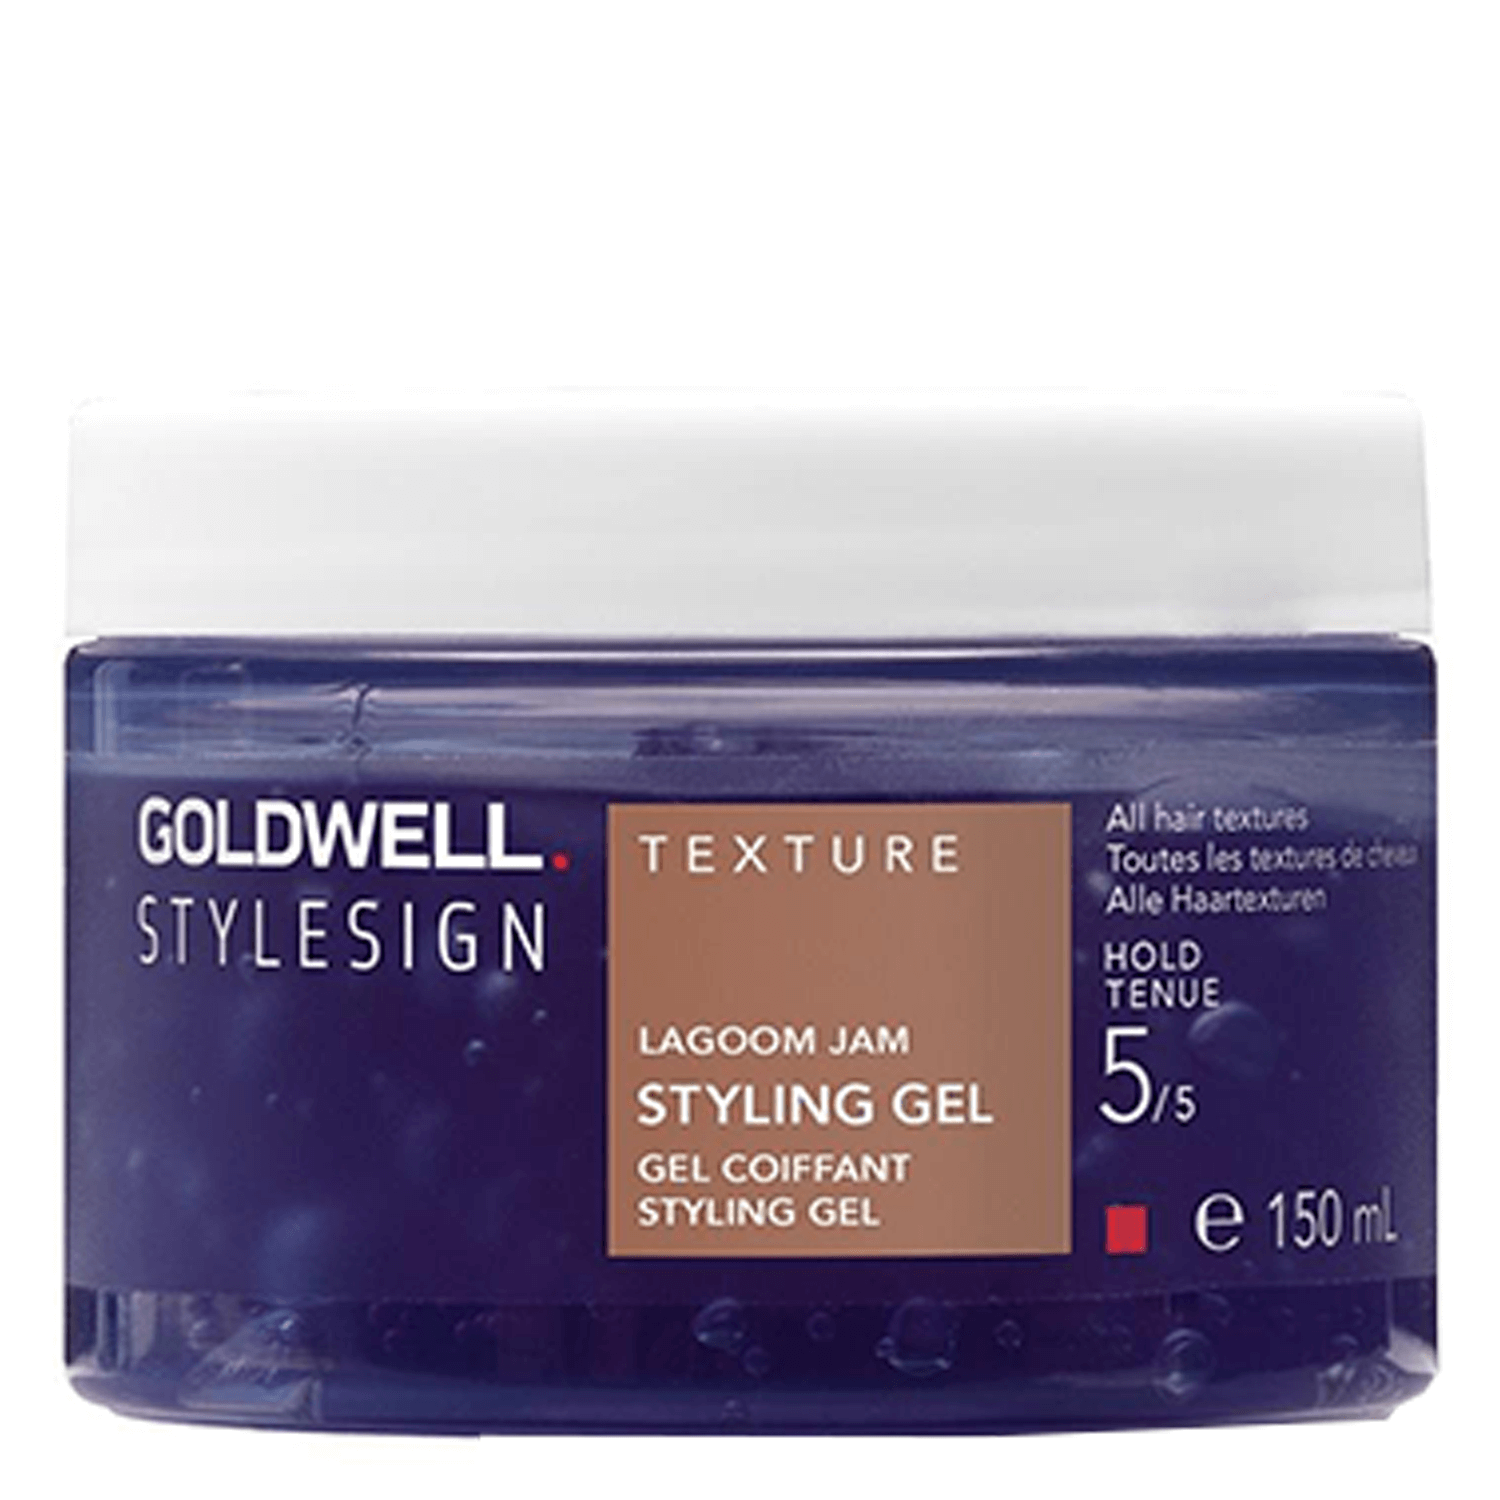 Produktbild von StyleSign - texture lagoom jam styling gel